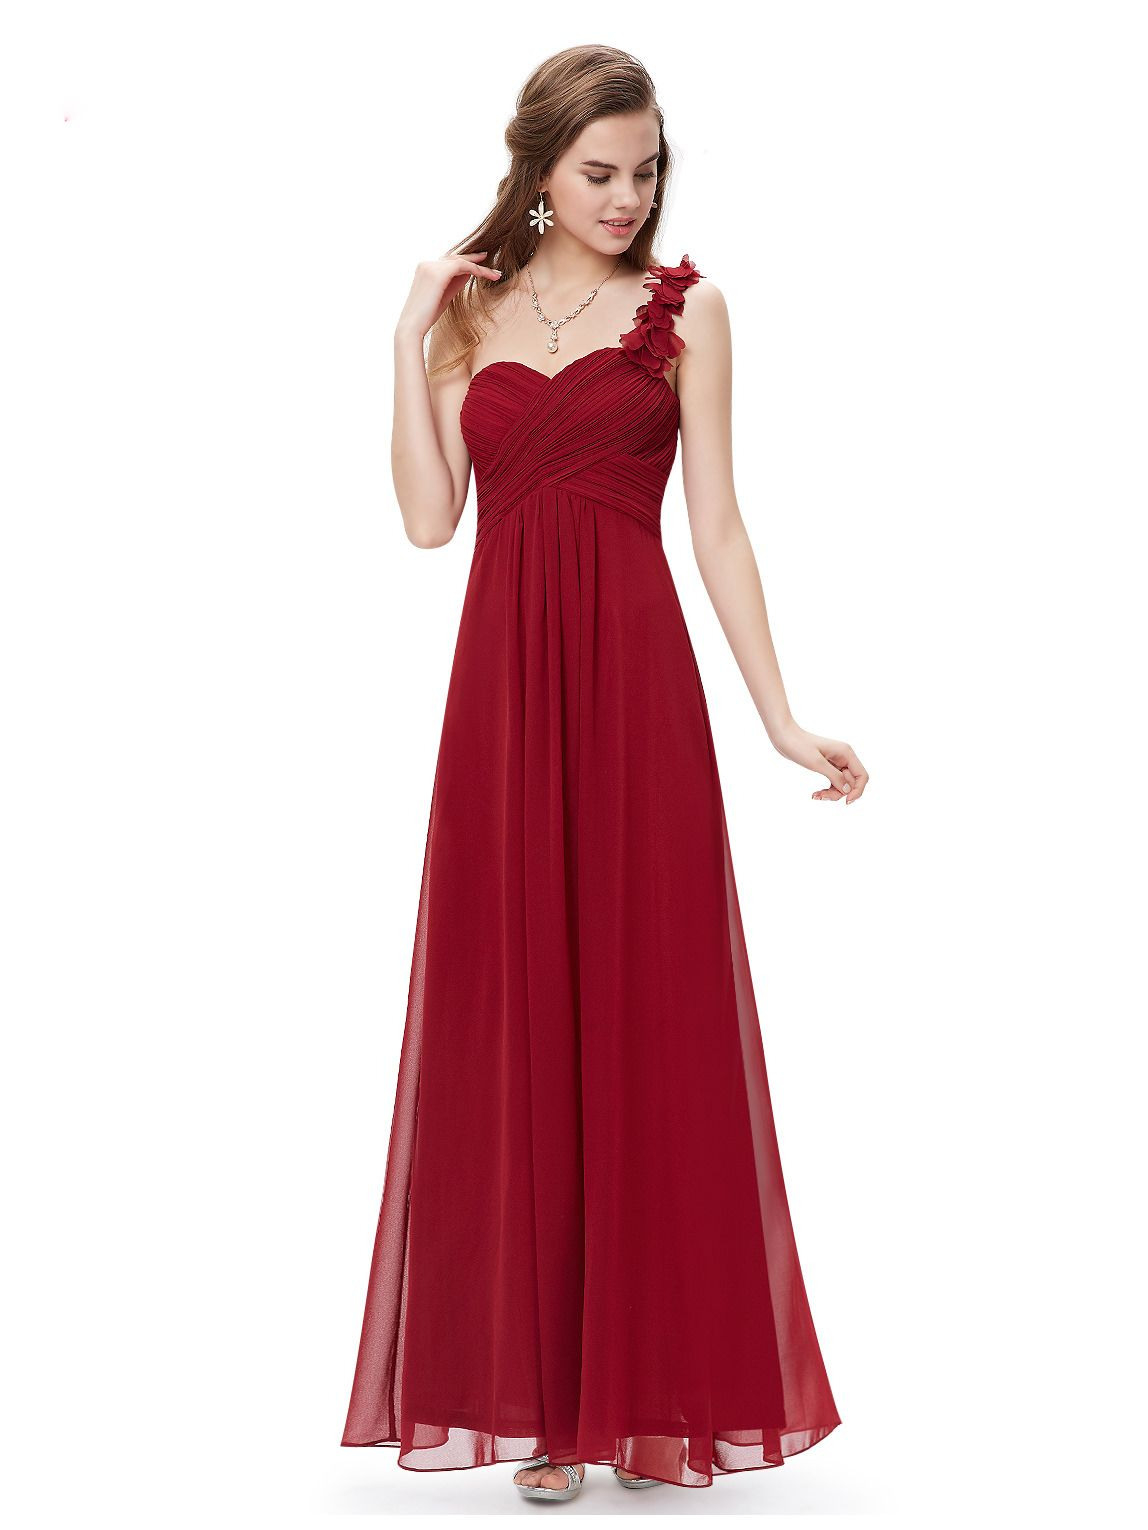 Langes One-Shoulder Abendkleid Rot | Festliche Kleider